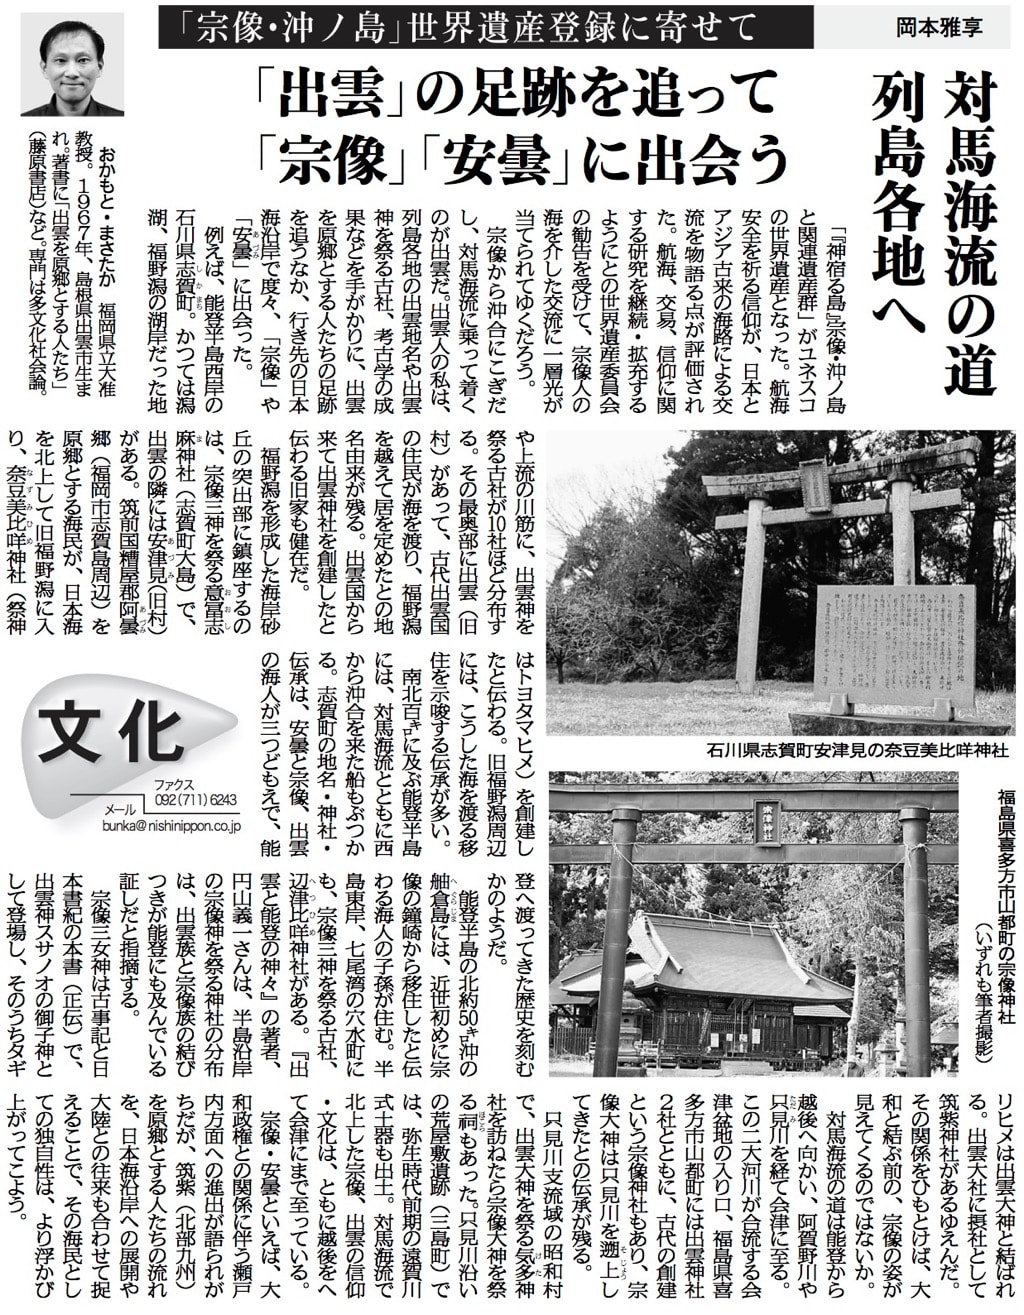 西日本新聞社提供（許諾済）